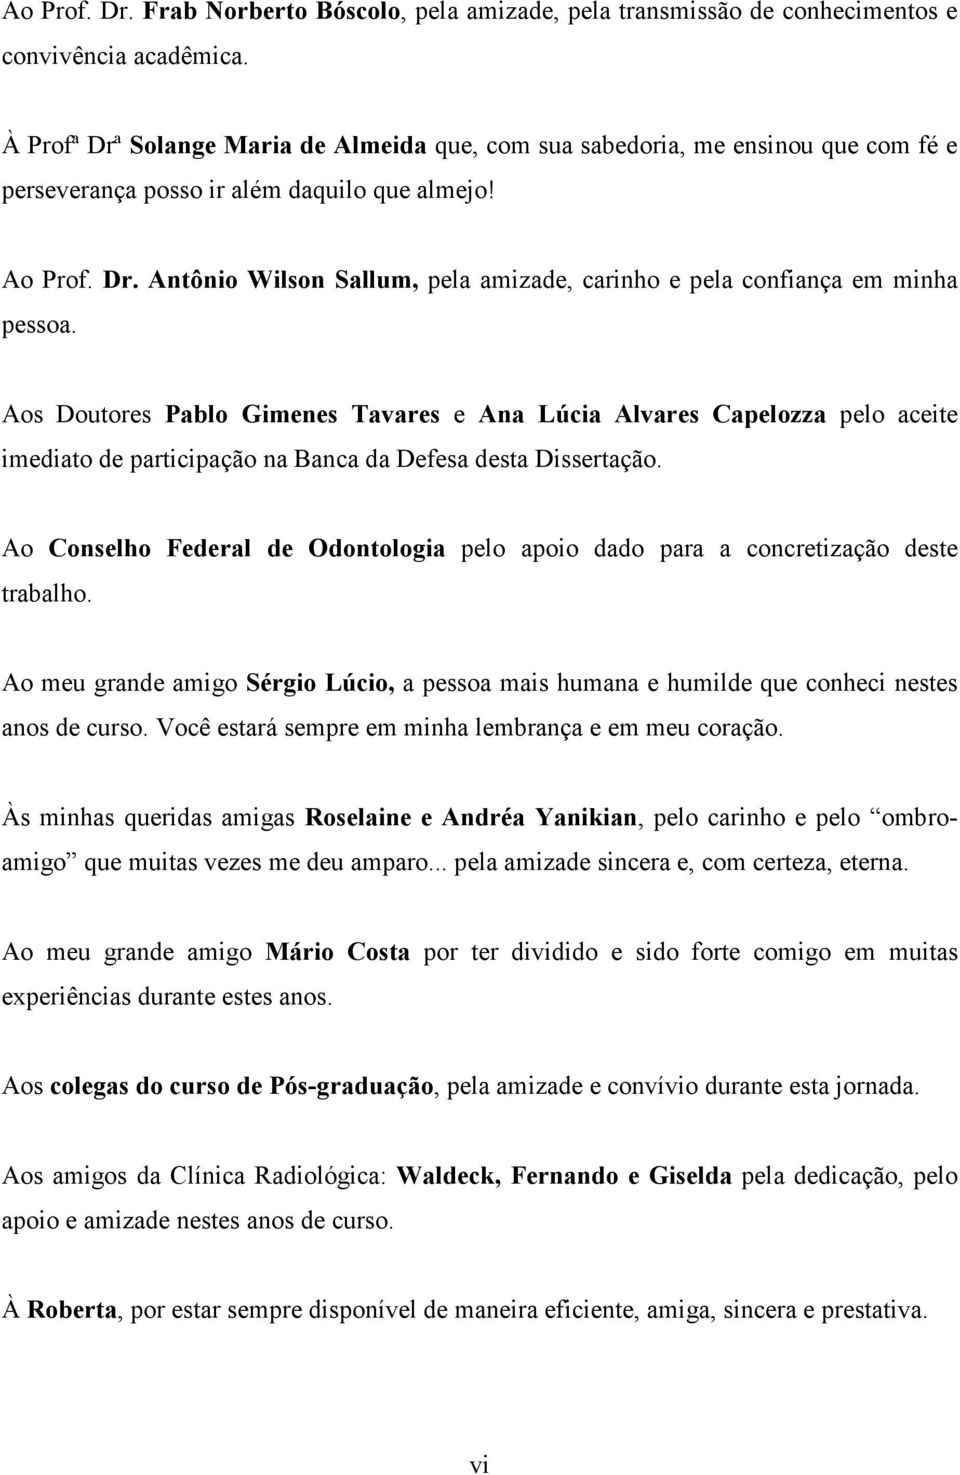 Aos Doutores Pablo Gimenes Tavares e Ana Lúcia Alvares Capelozza pelo aceite imediato de participação na Banca da Defesa desta Dissertação.